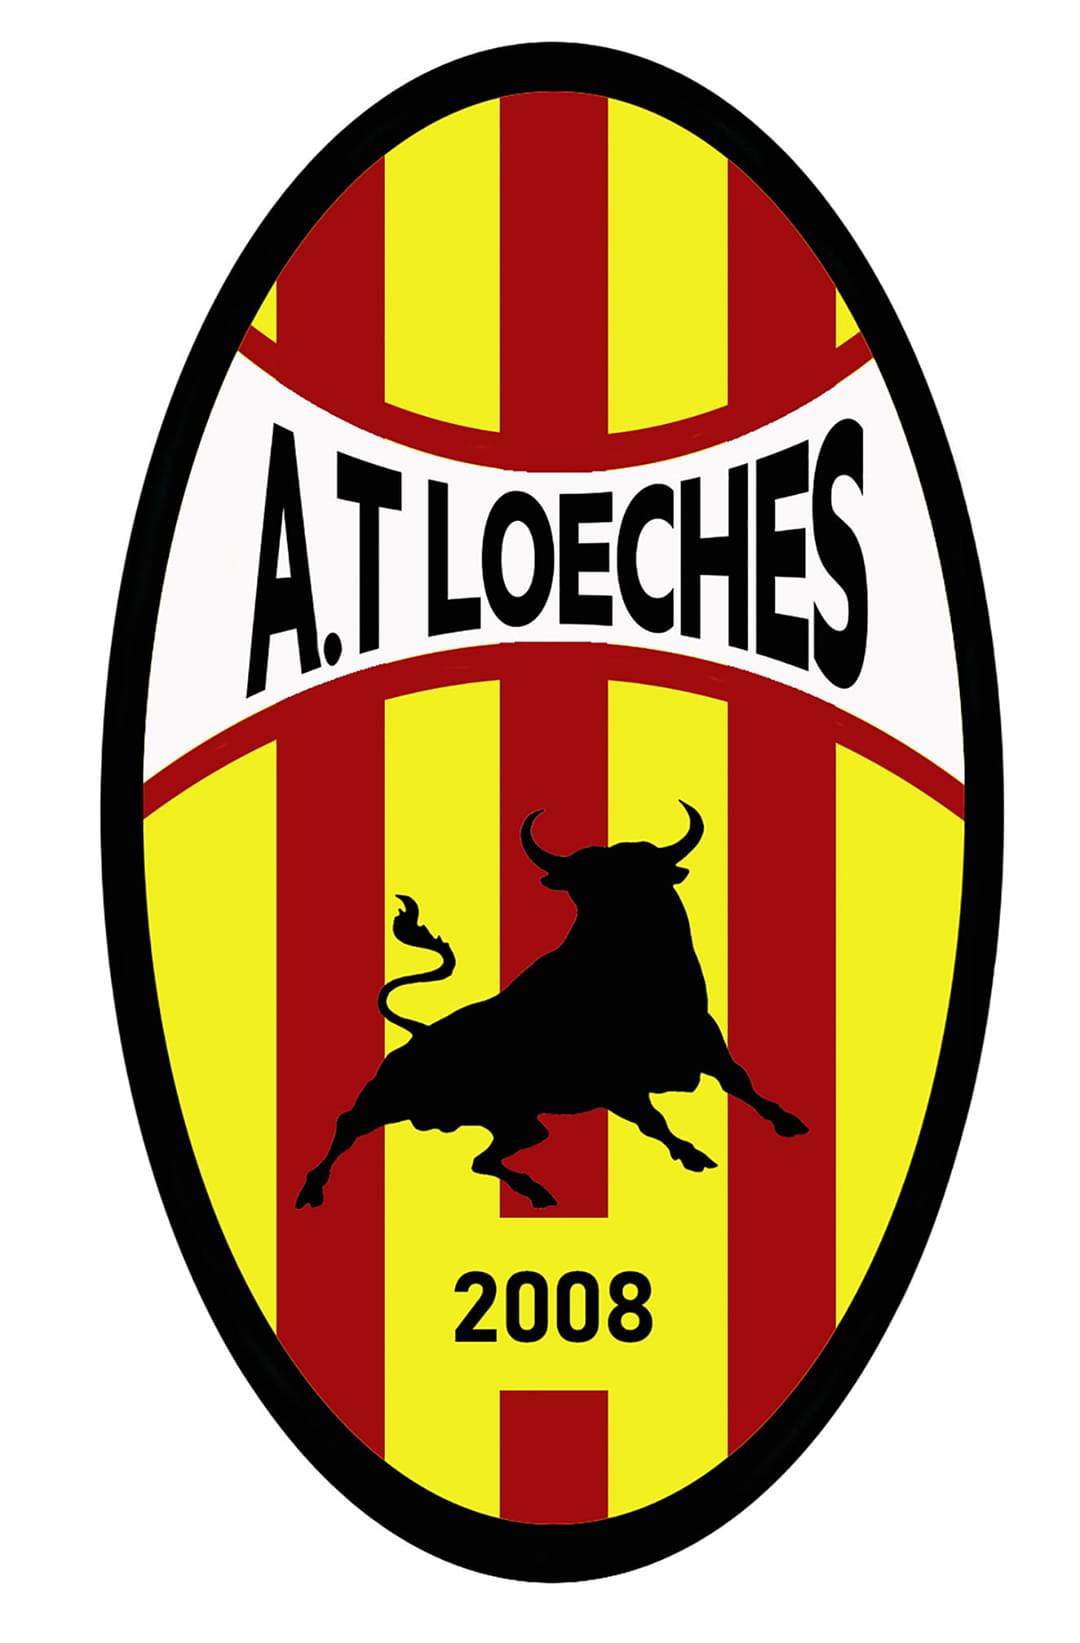 ATLETICO LOECHES